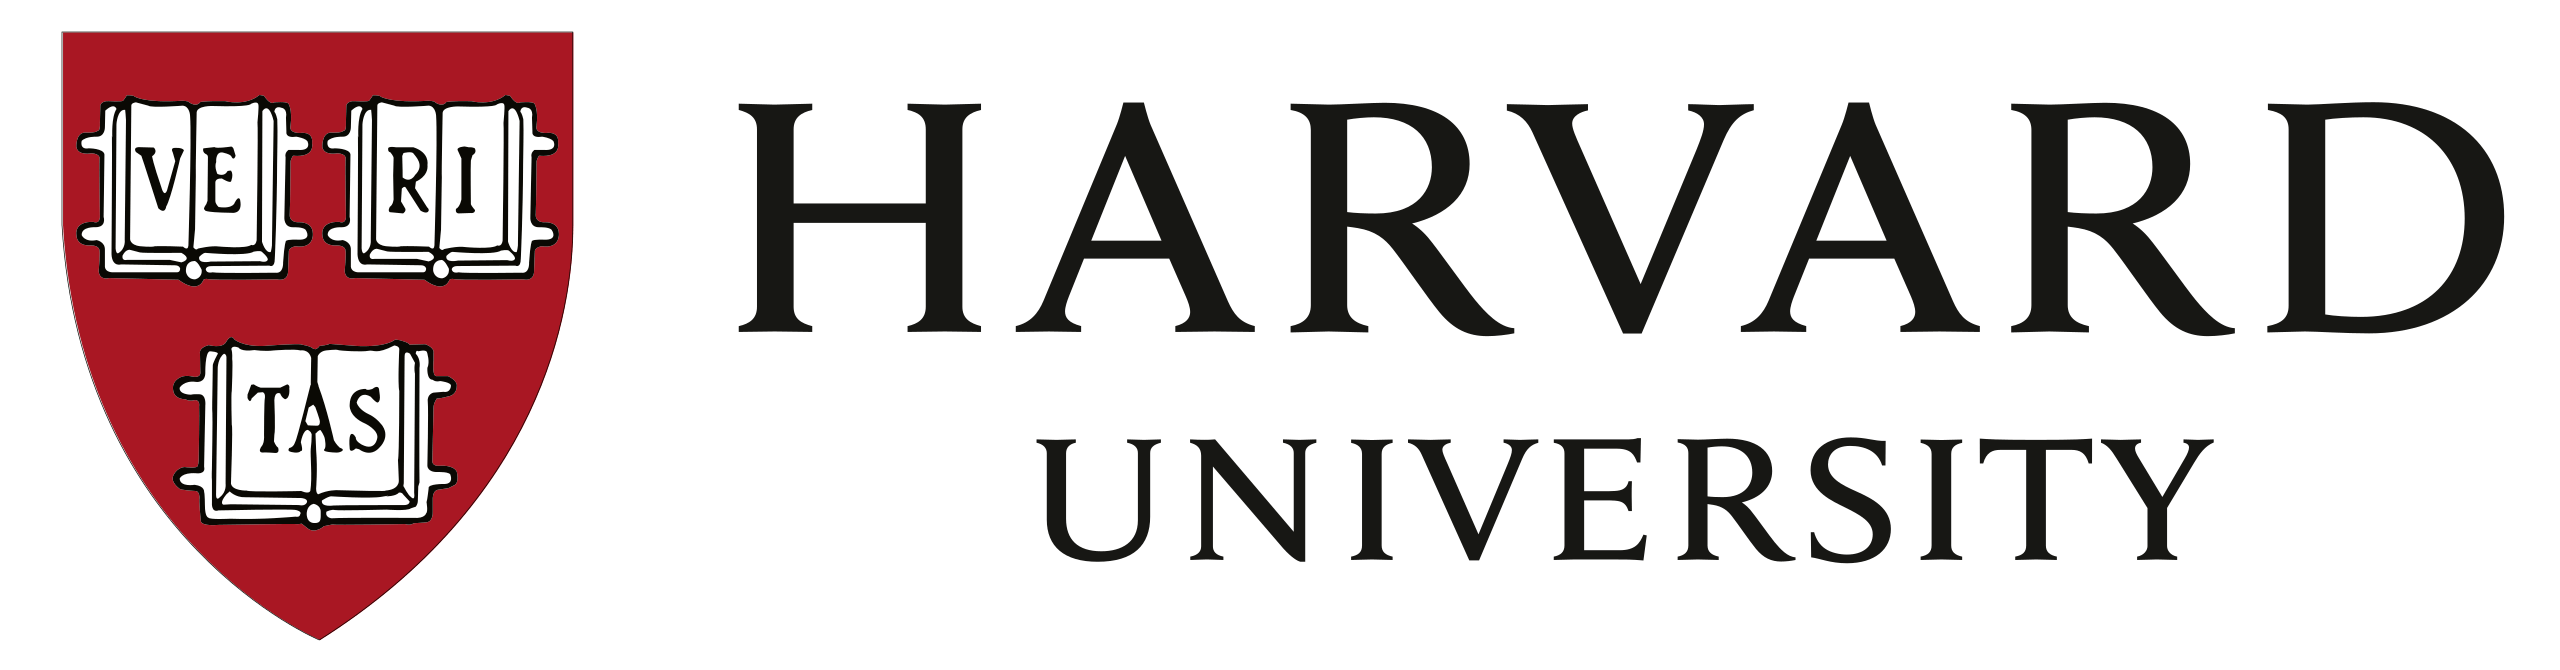 Logo Harvard Company